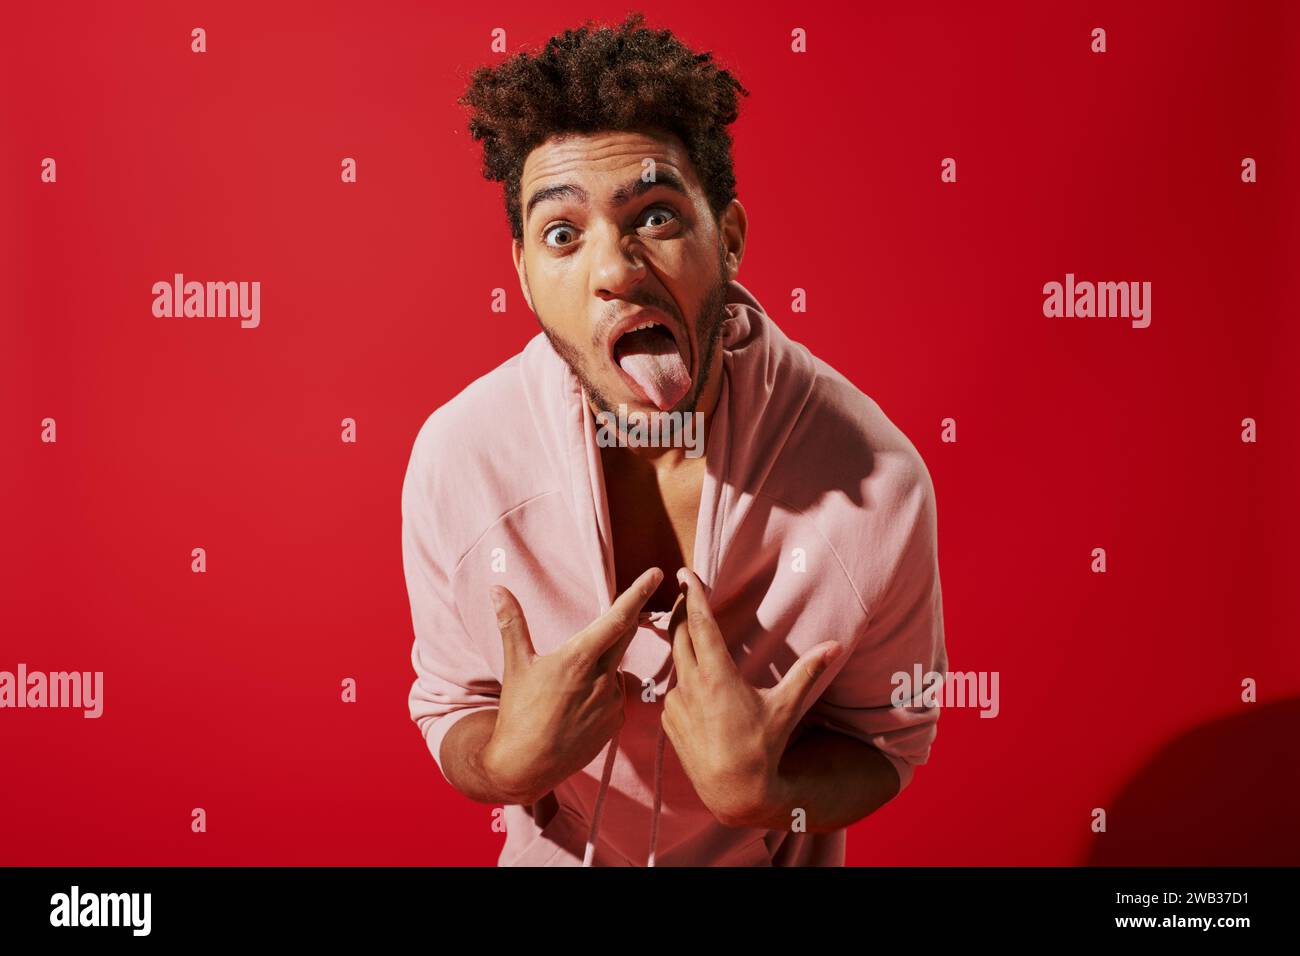 simpatico afroamericano che tira la felpa con cappuccio rosa e si staglia la lingua mentre si trova su sfondo rosso Foto Stock